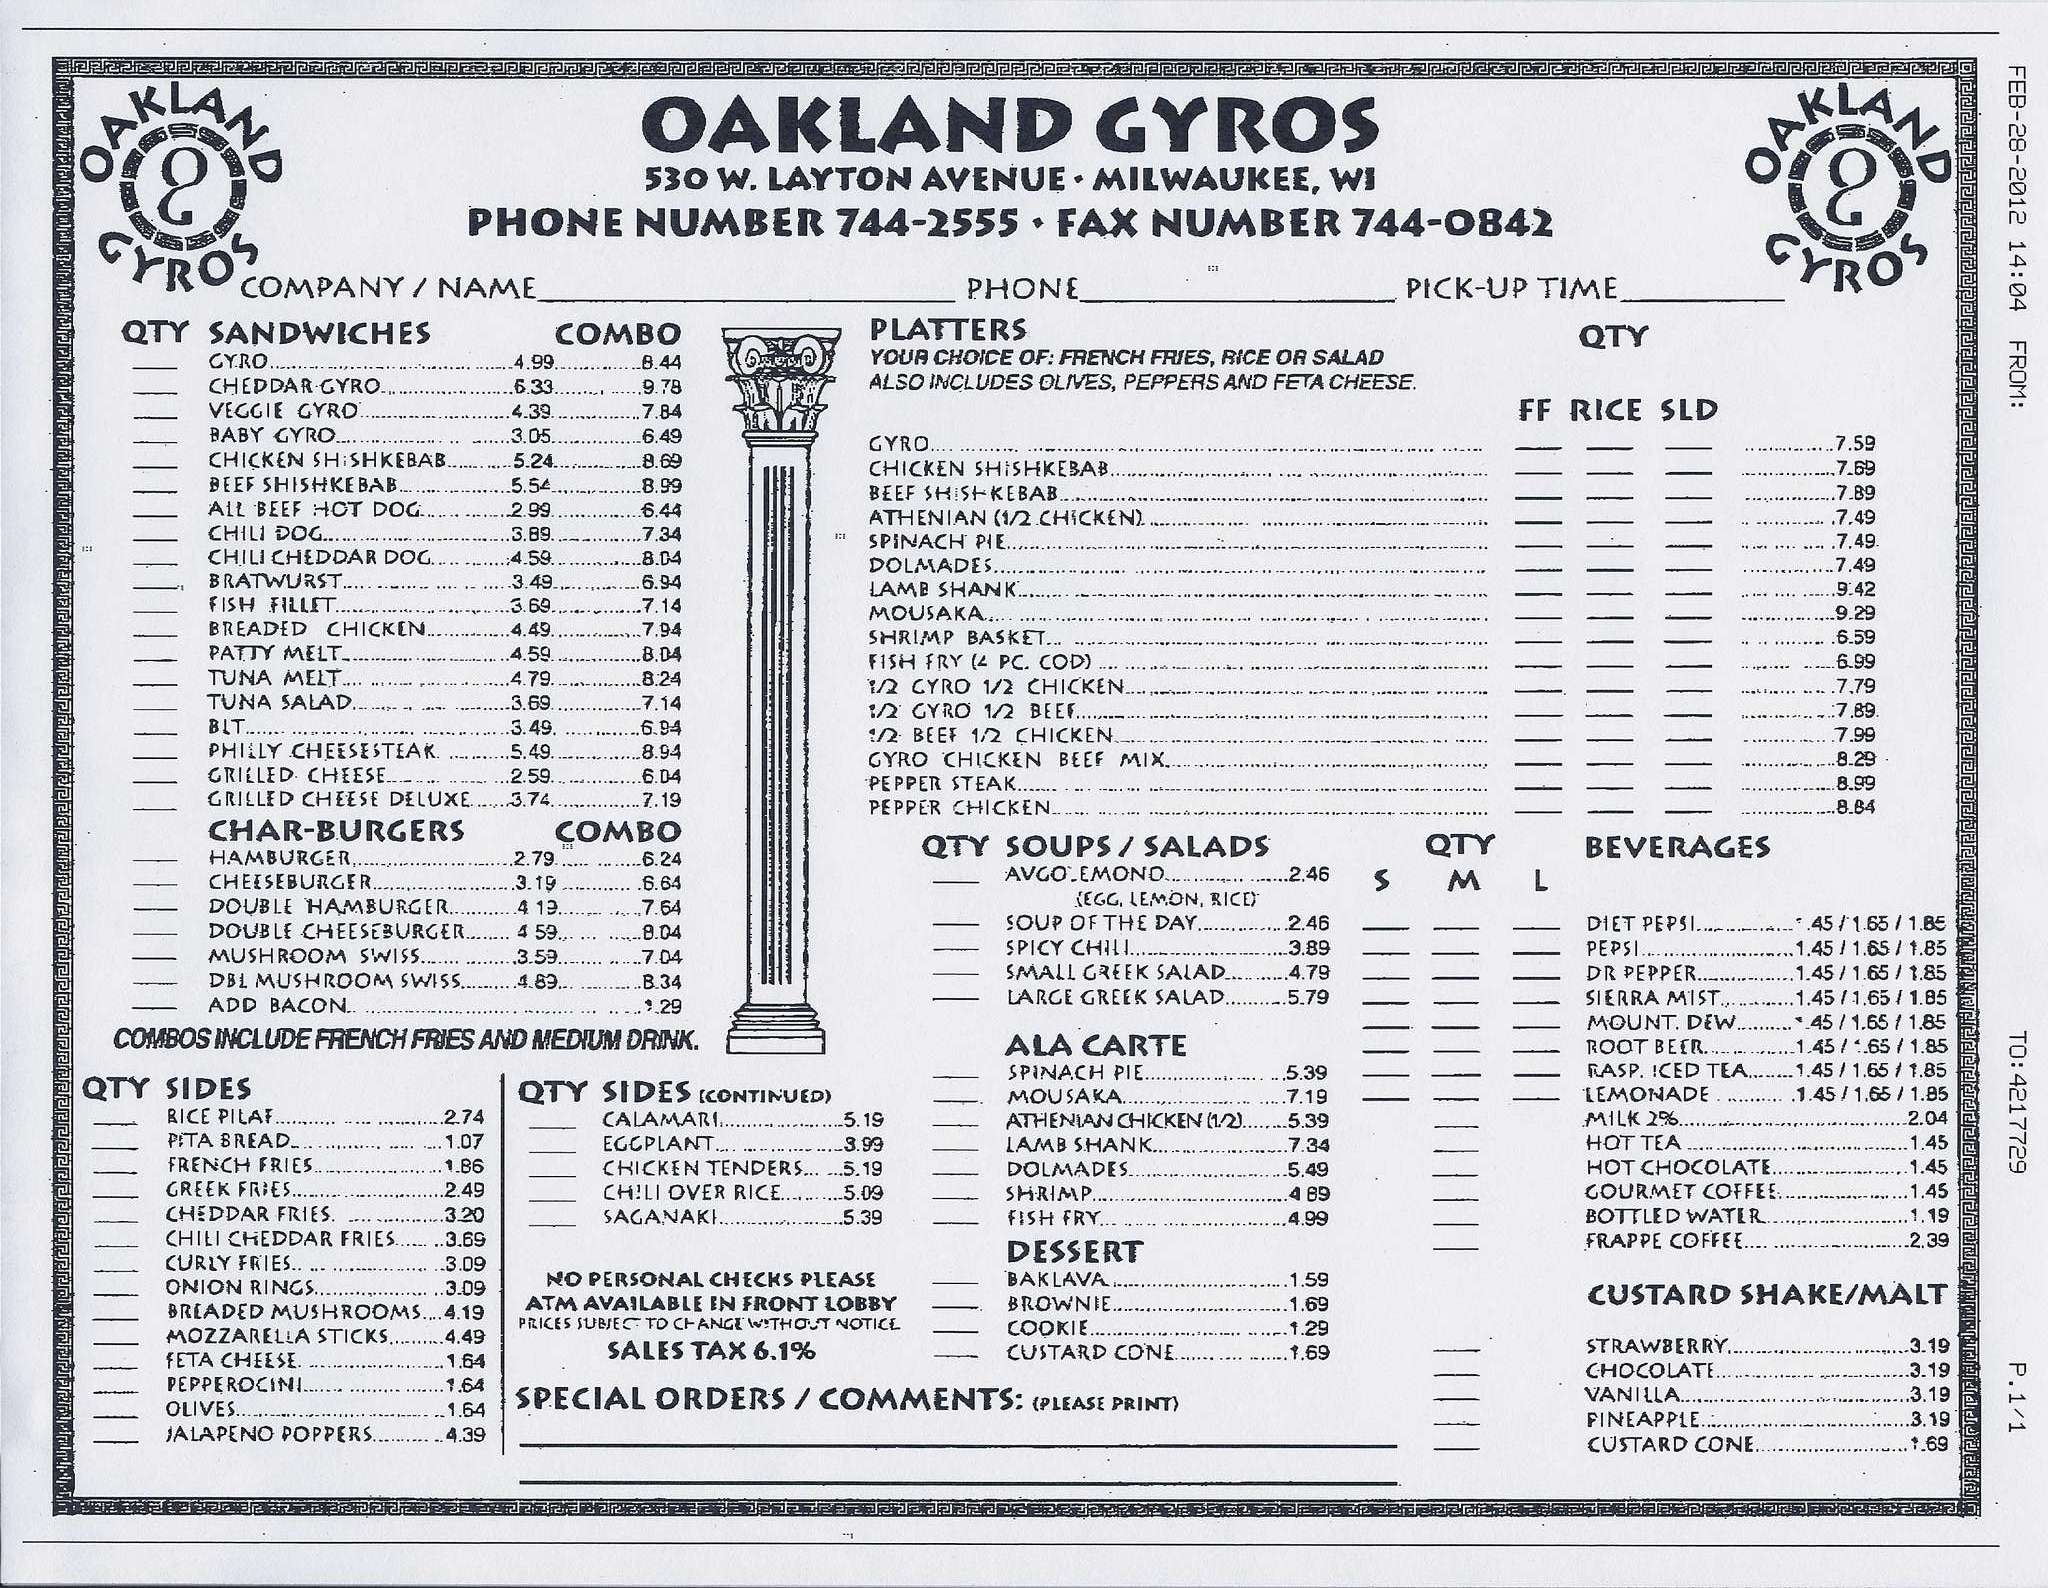 Gyros меню